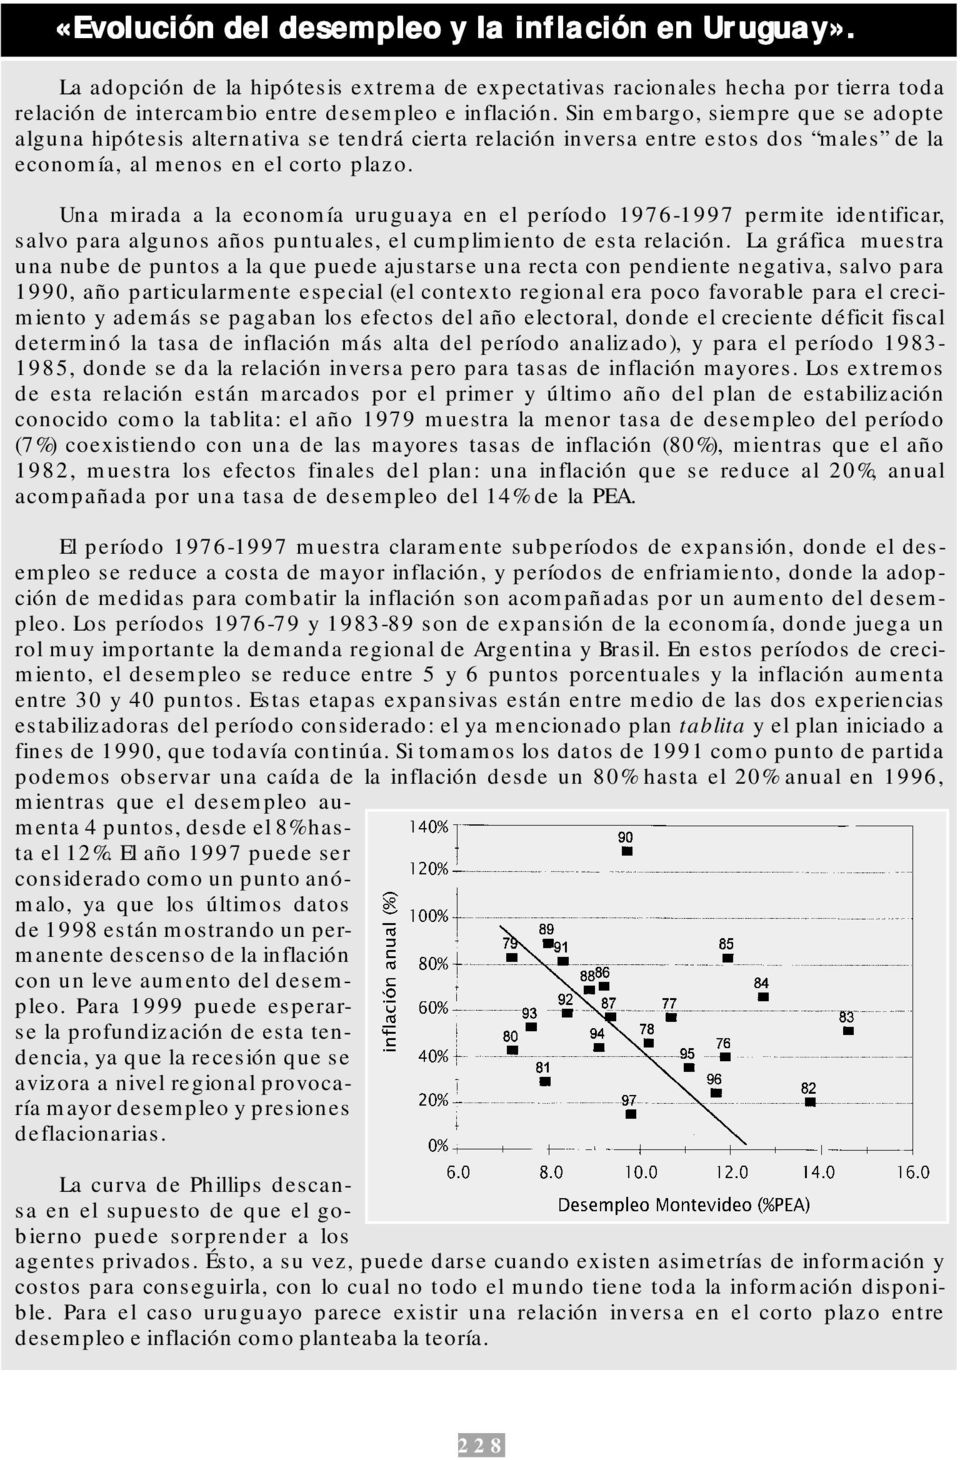 Una mirada a la economía uruguaya en el período 1976-1997 permite identificar, salvo para algunos años puntuales, el cumplimiento de esta relación.